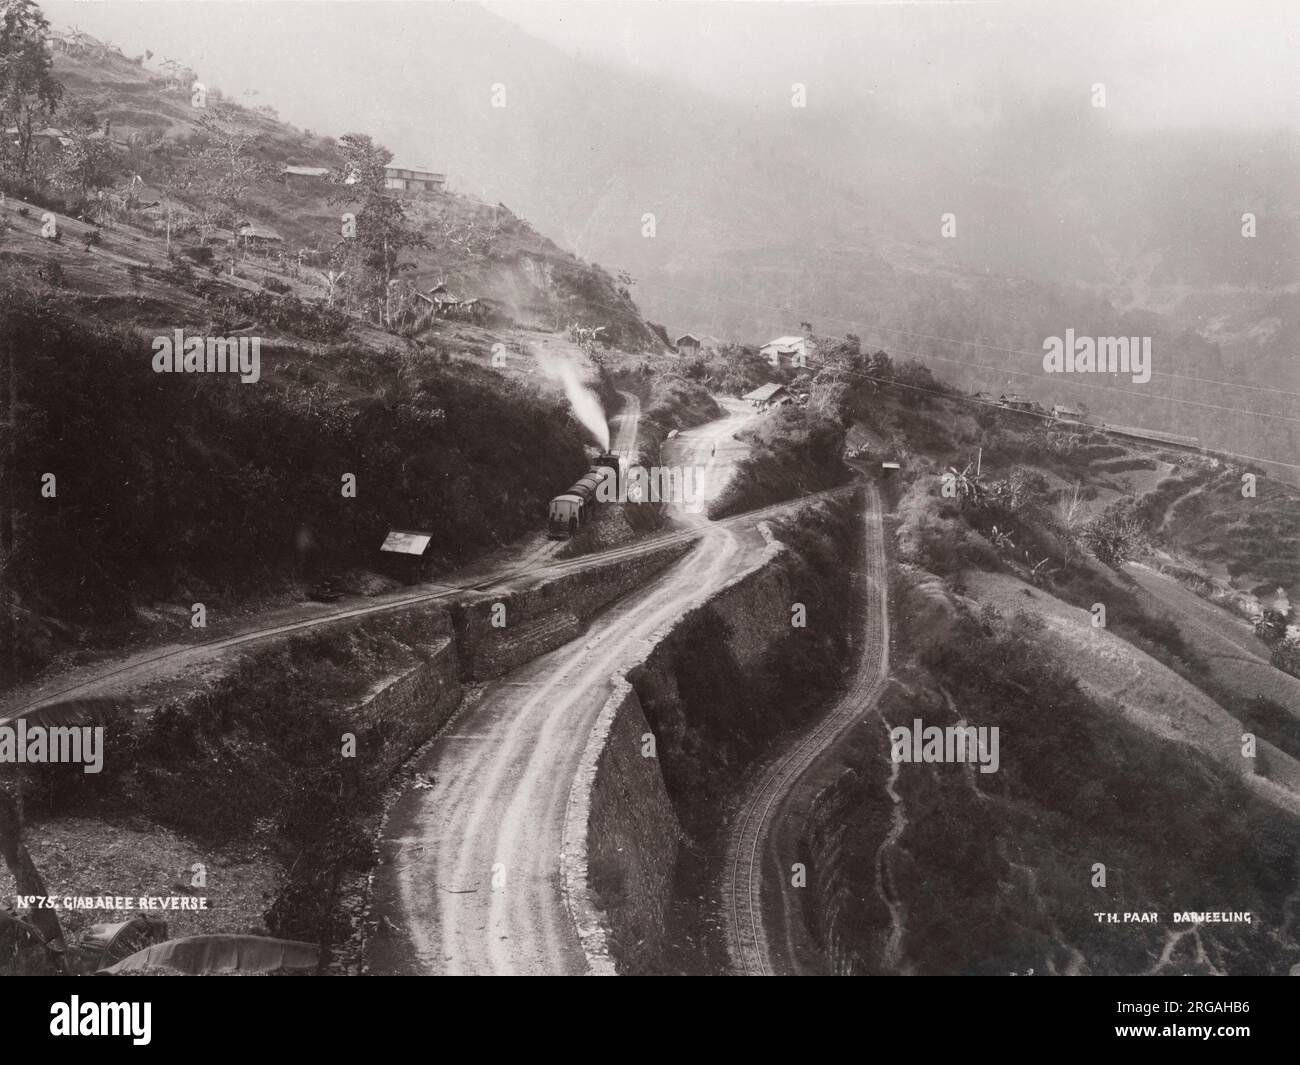 c.1900 photo d'époque: Giabaree Reverse, station de marche arrière, trains sur la piste, Darjeeling Railway, Thomas Paar photographie. Banque D'Images